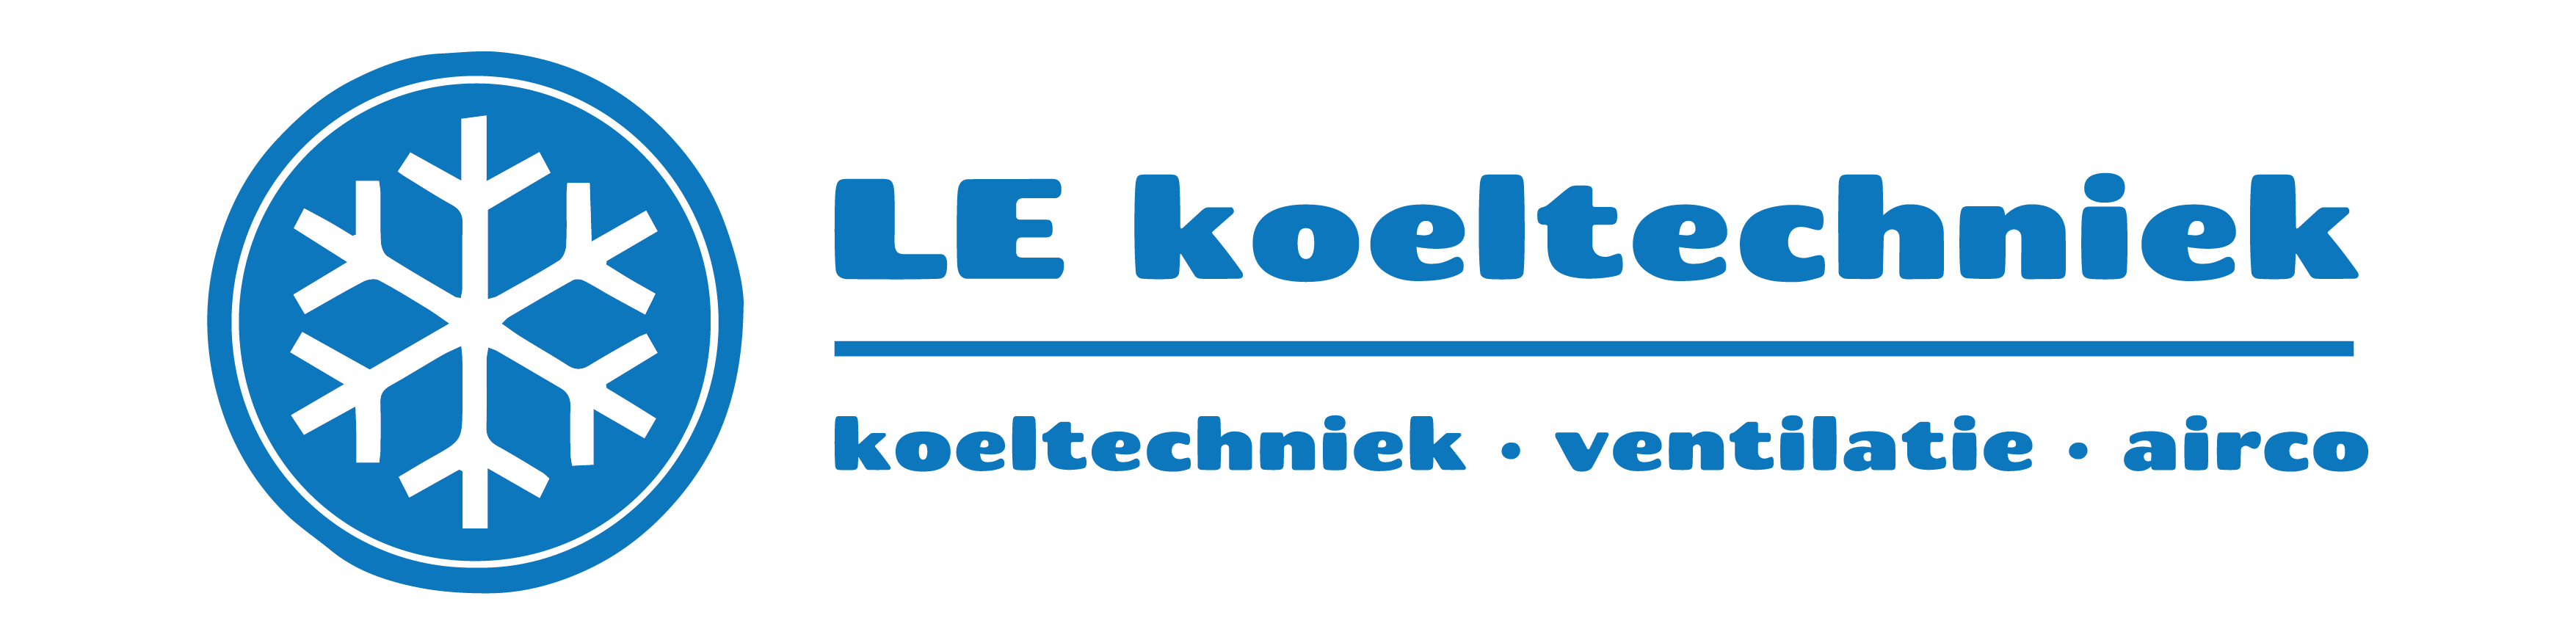 Logo LE koeltechniek - Airco en koeltechnieken